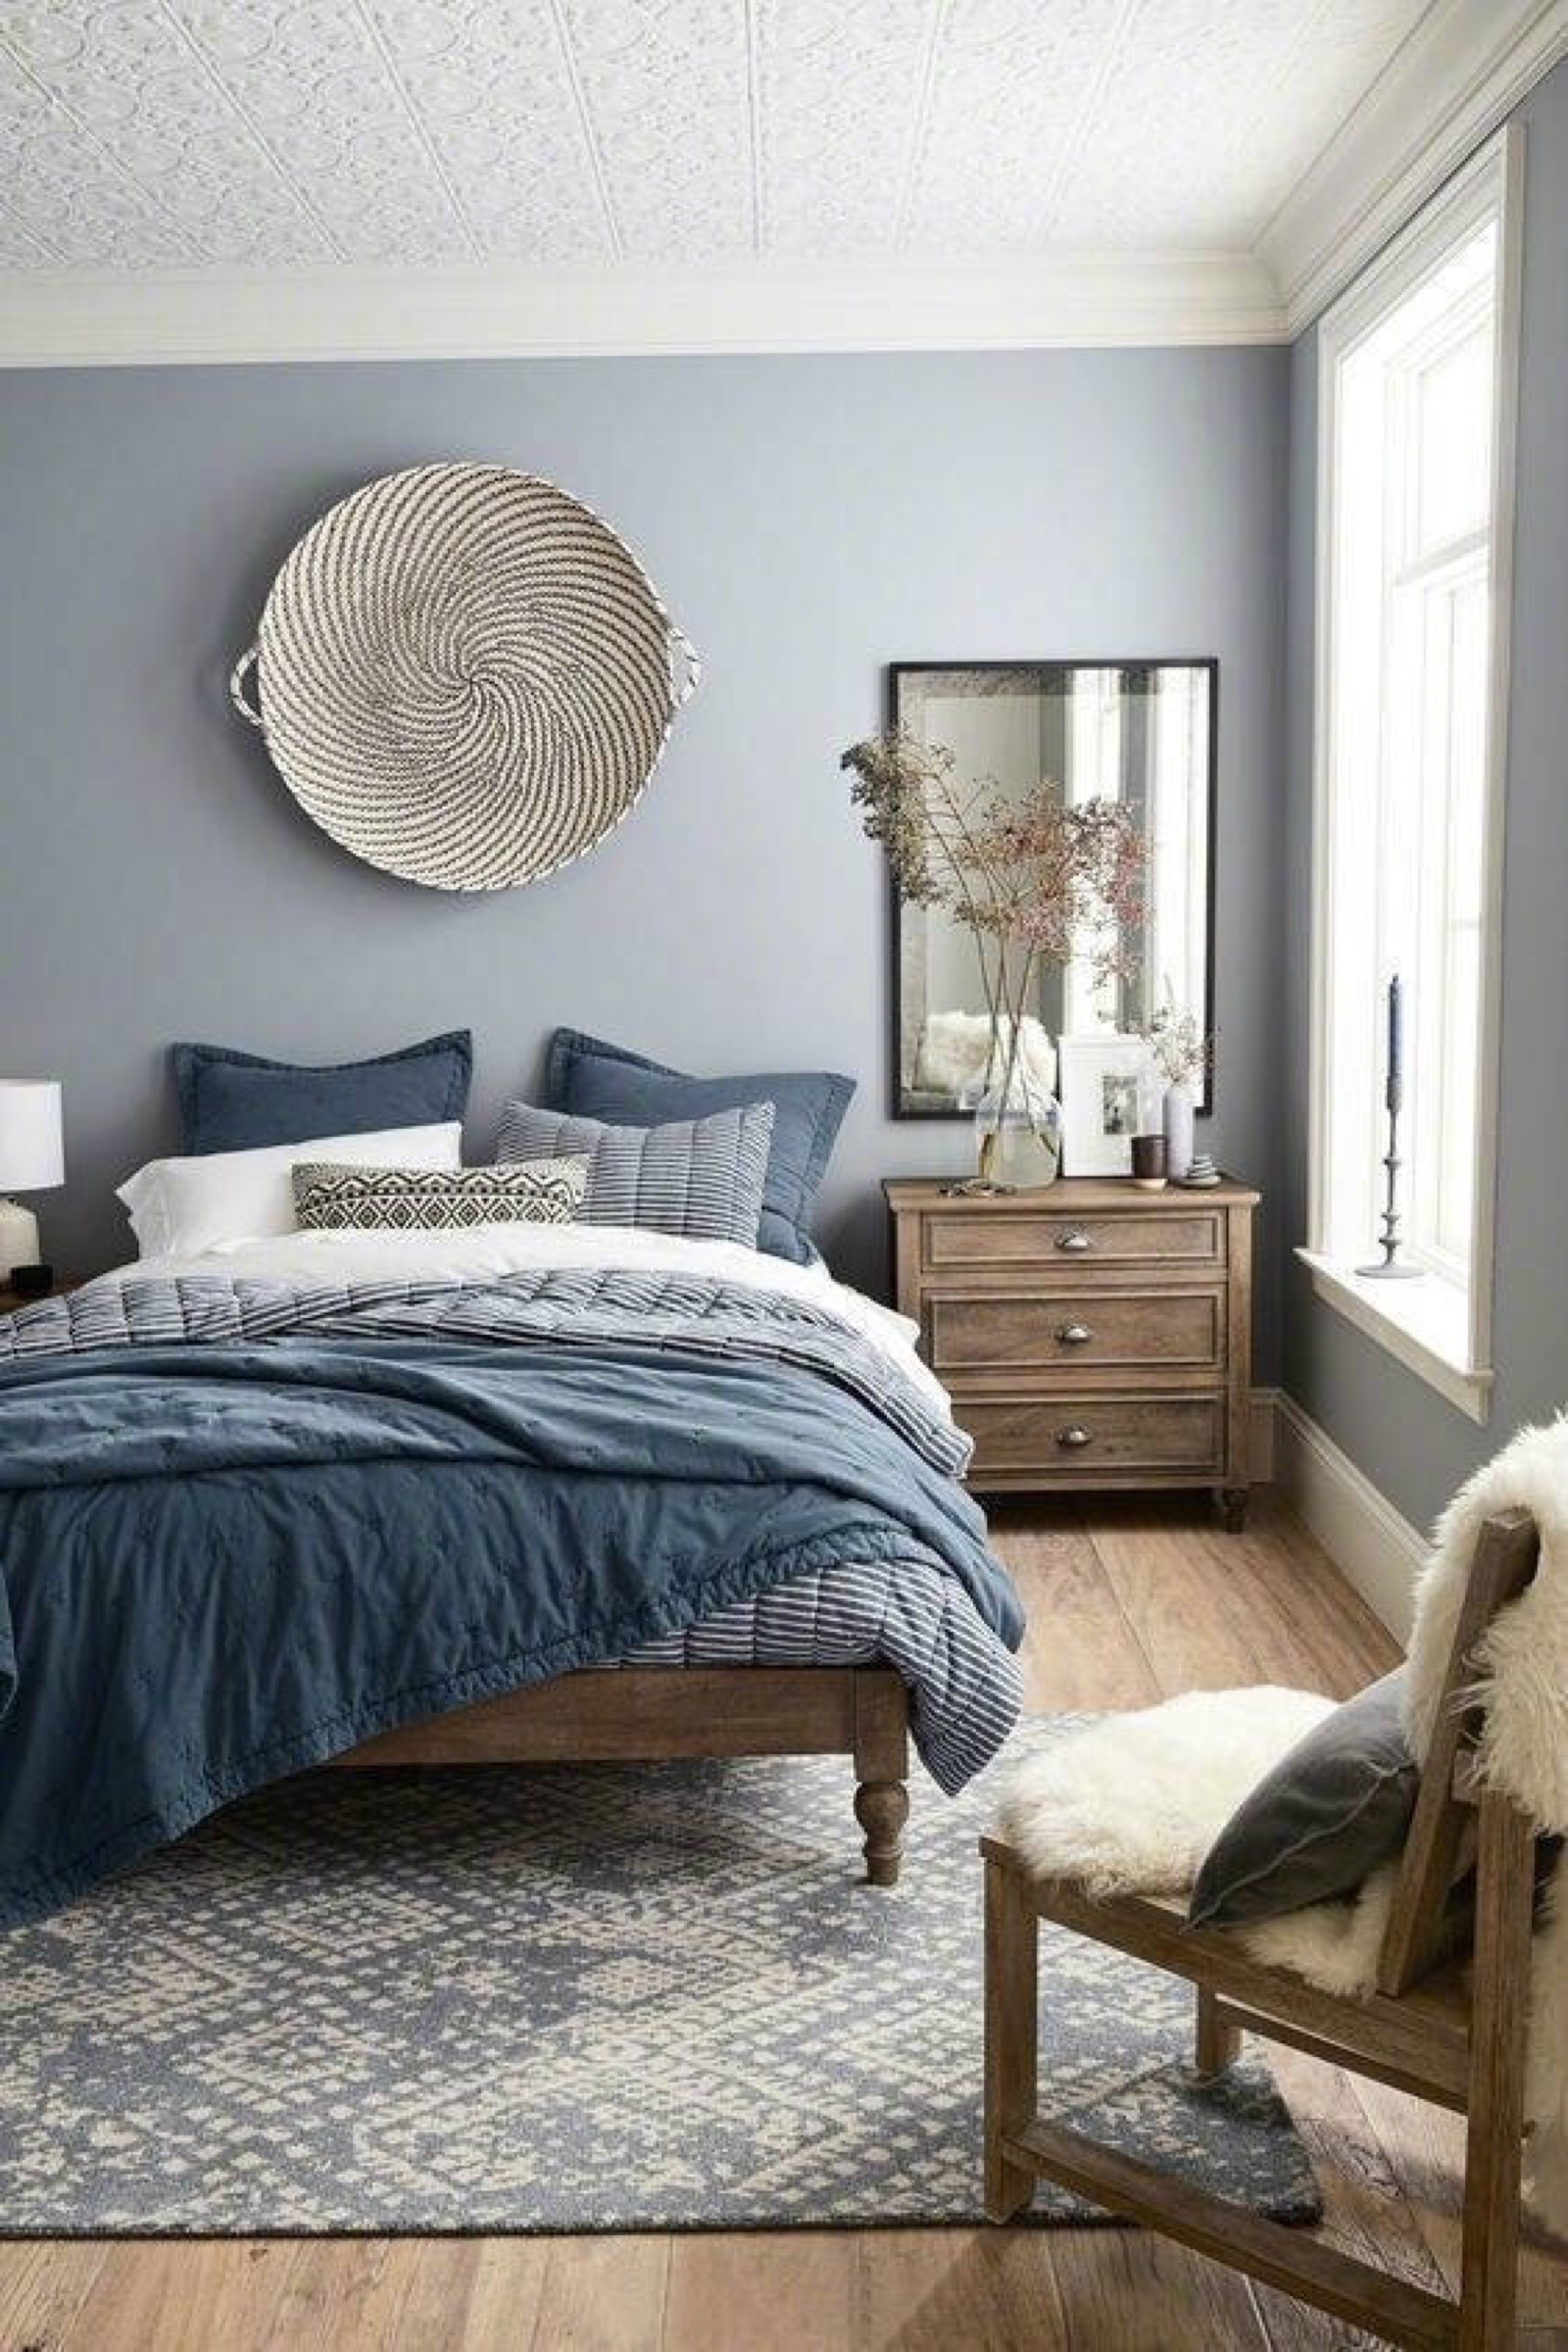 蓝色床头背景墙,简约又优雅